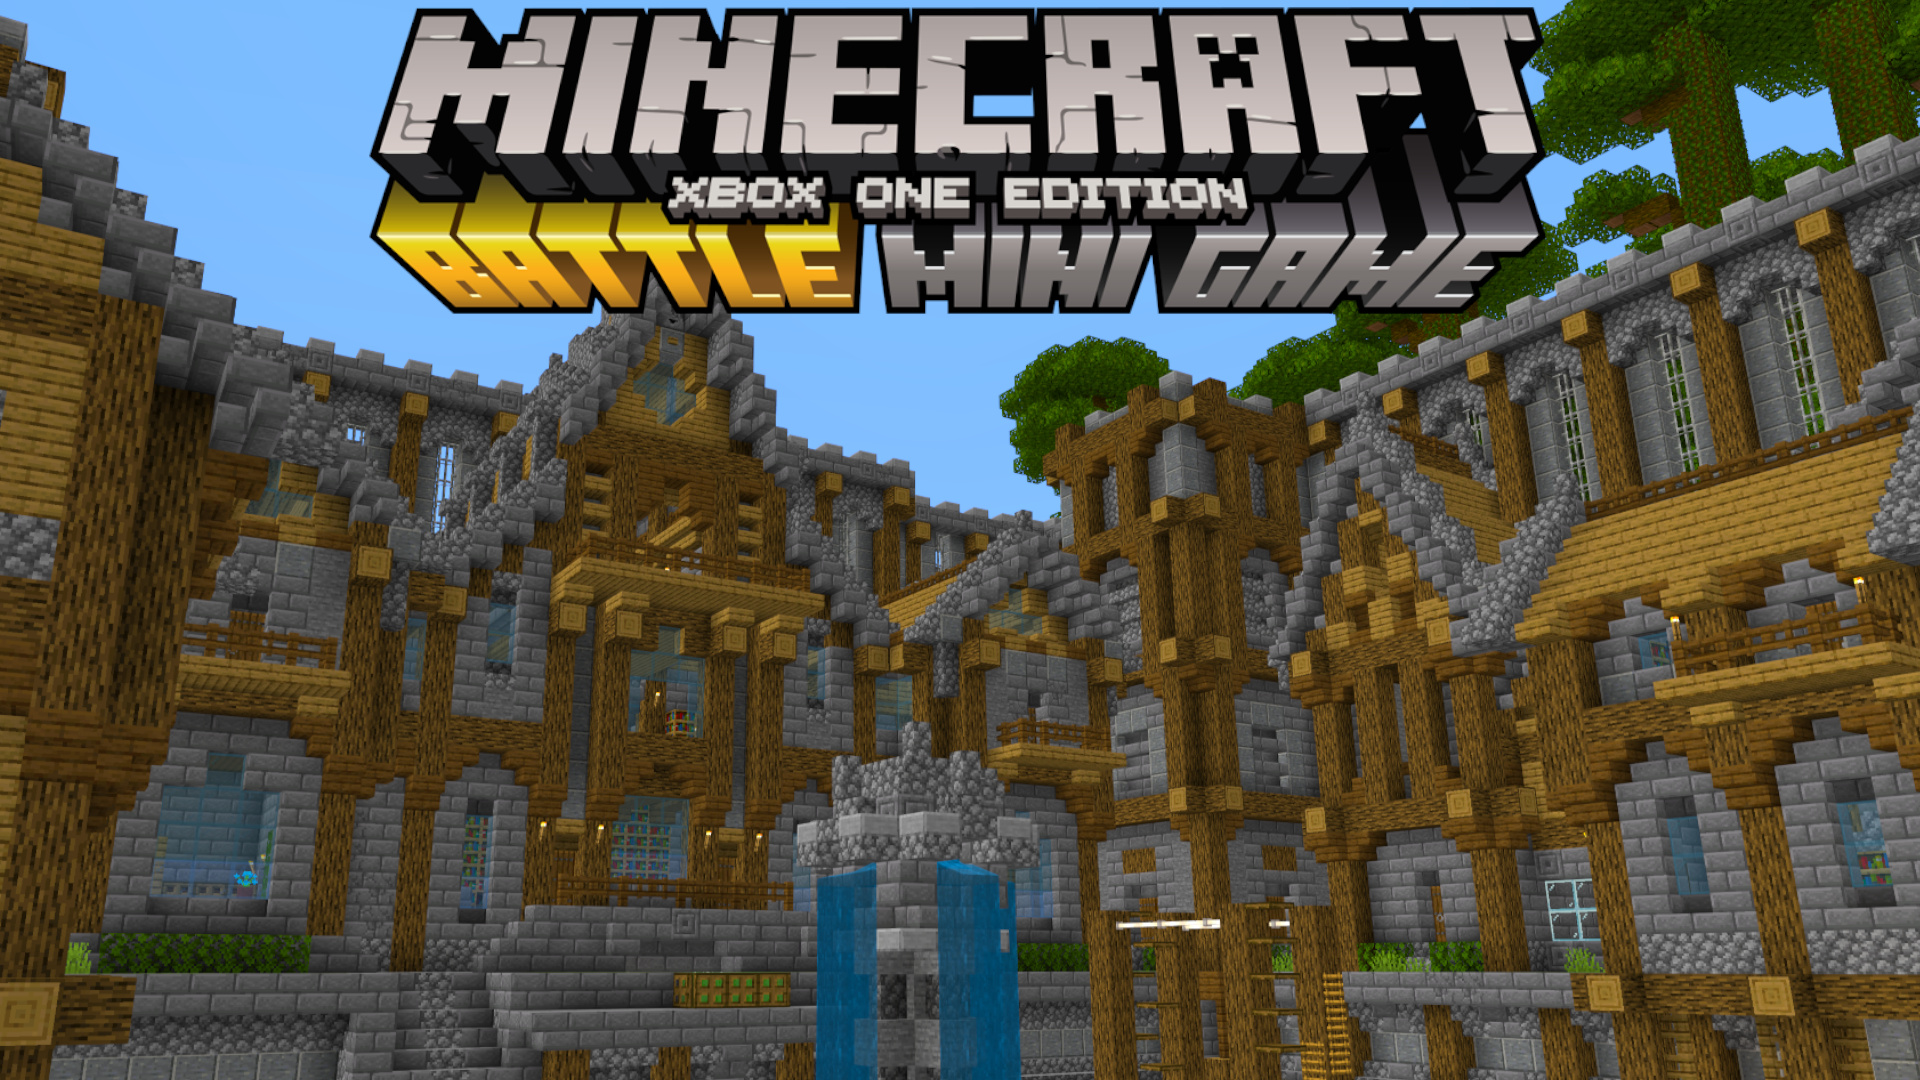 Minecraft Battle Minigame for Bedrock! Minecraft Map